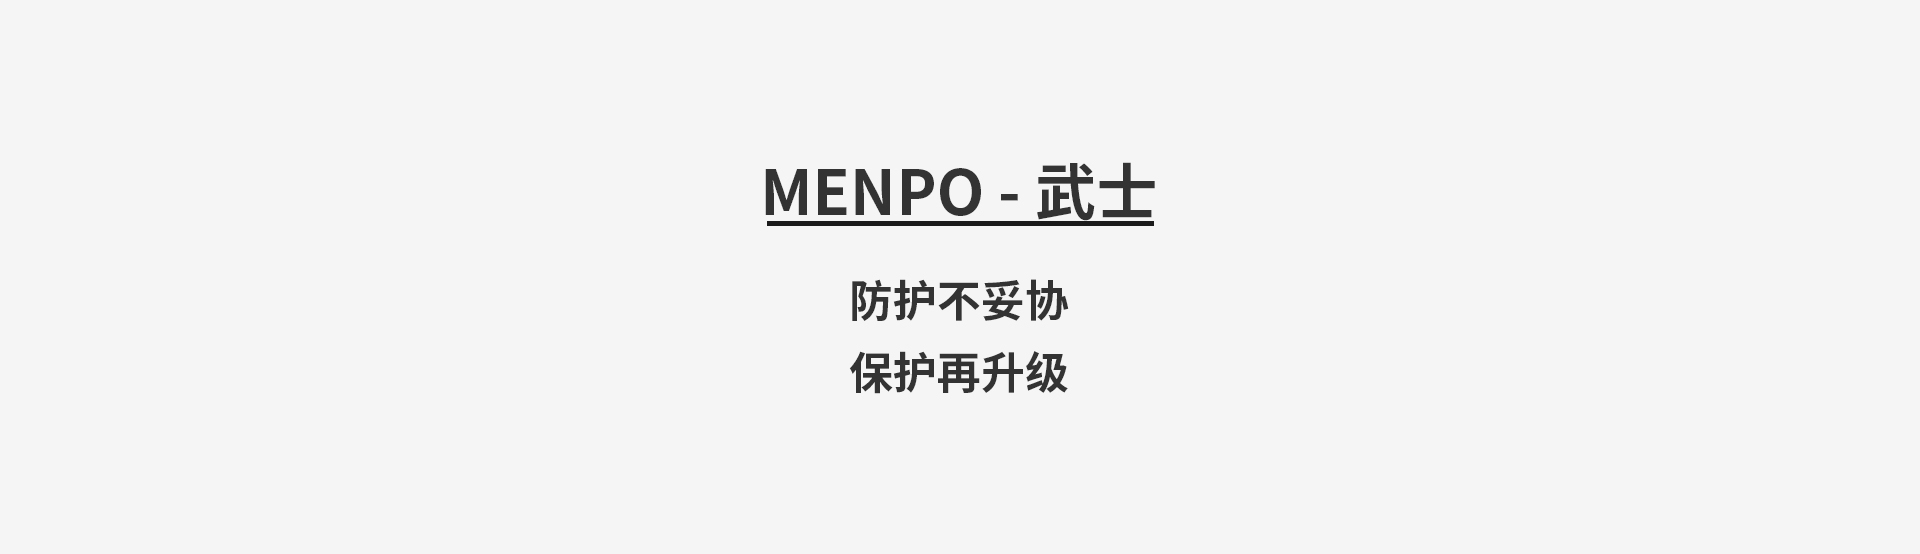 商品內頁-MENPO1.jpg